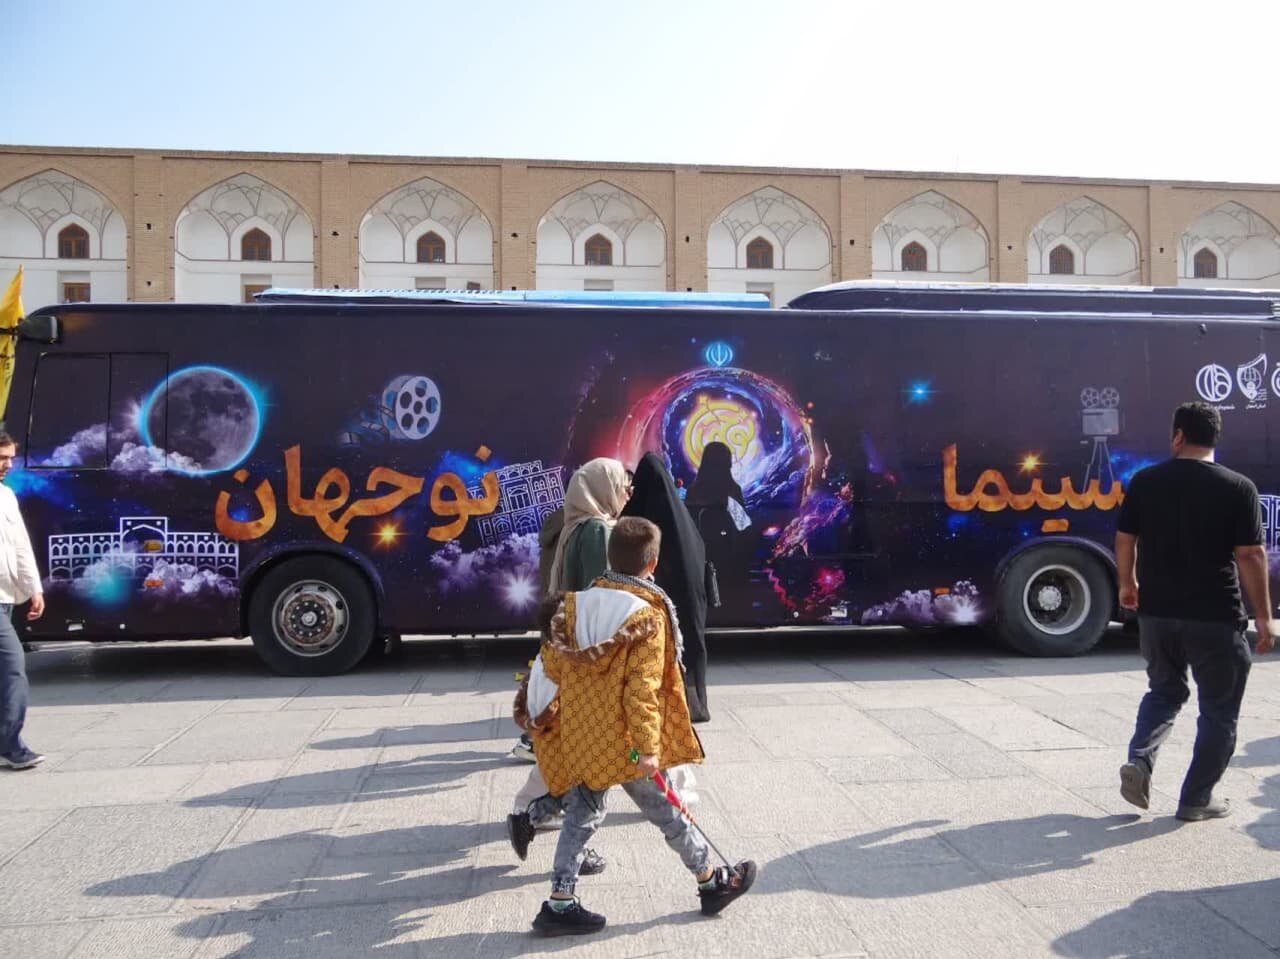 ۲ دستگاه اتوبوس در اصفهان سینما و کتابخانه سیار شد